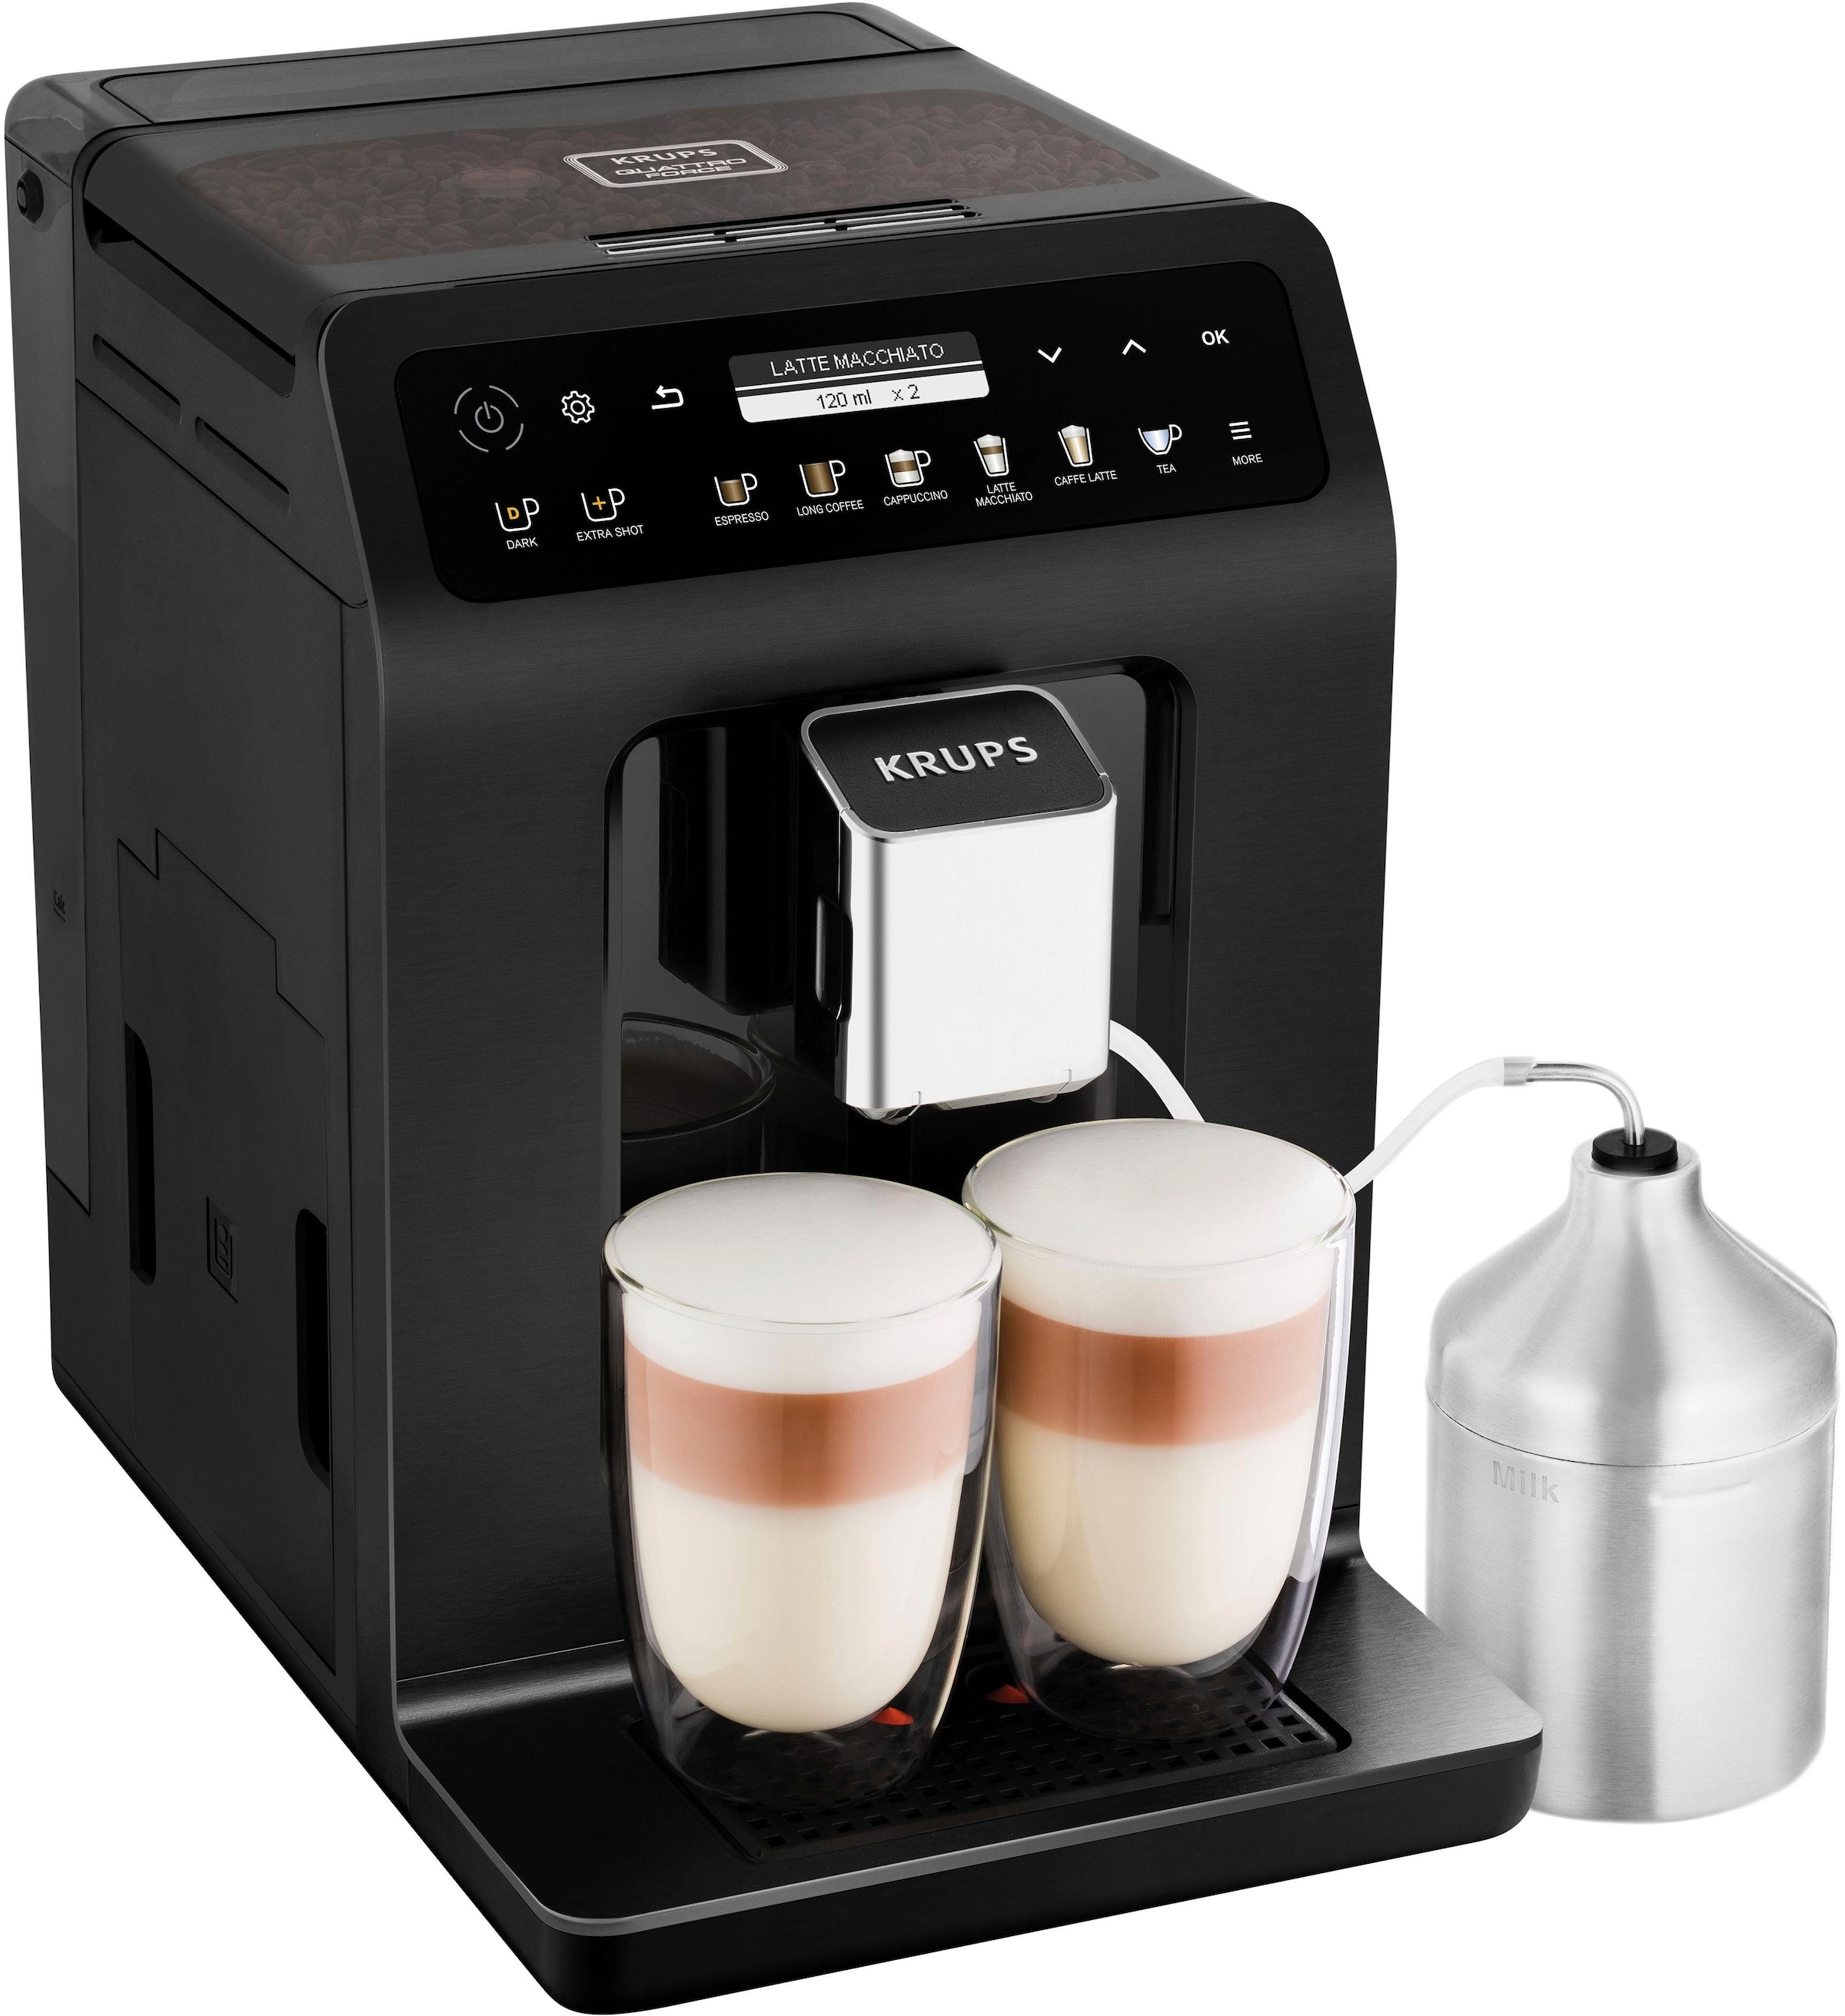 Krups Kaffeevollautomat "EA8948 Evidence Plus, vielfältige Kaffee-Spezialitäten auf Knopfdruck", einfache Bedienung dank